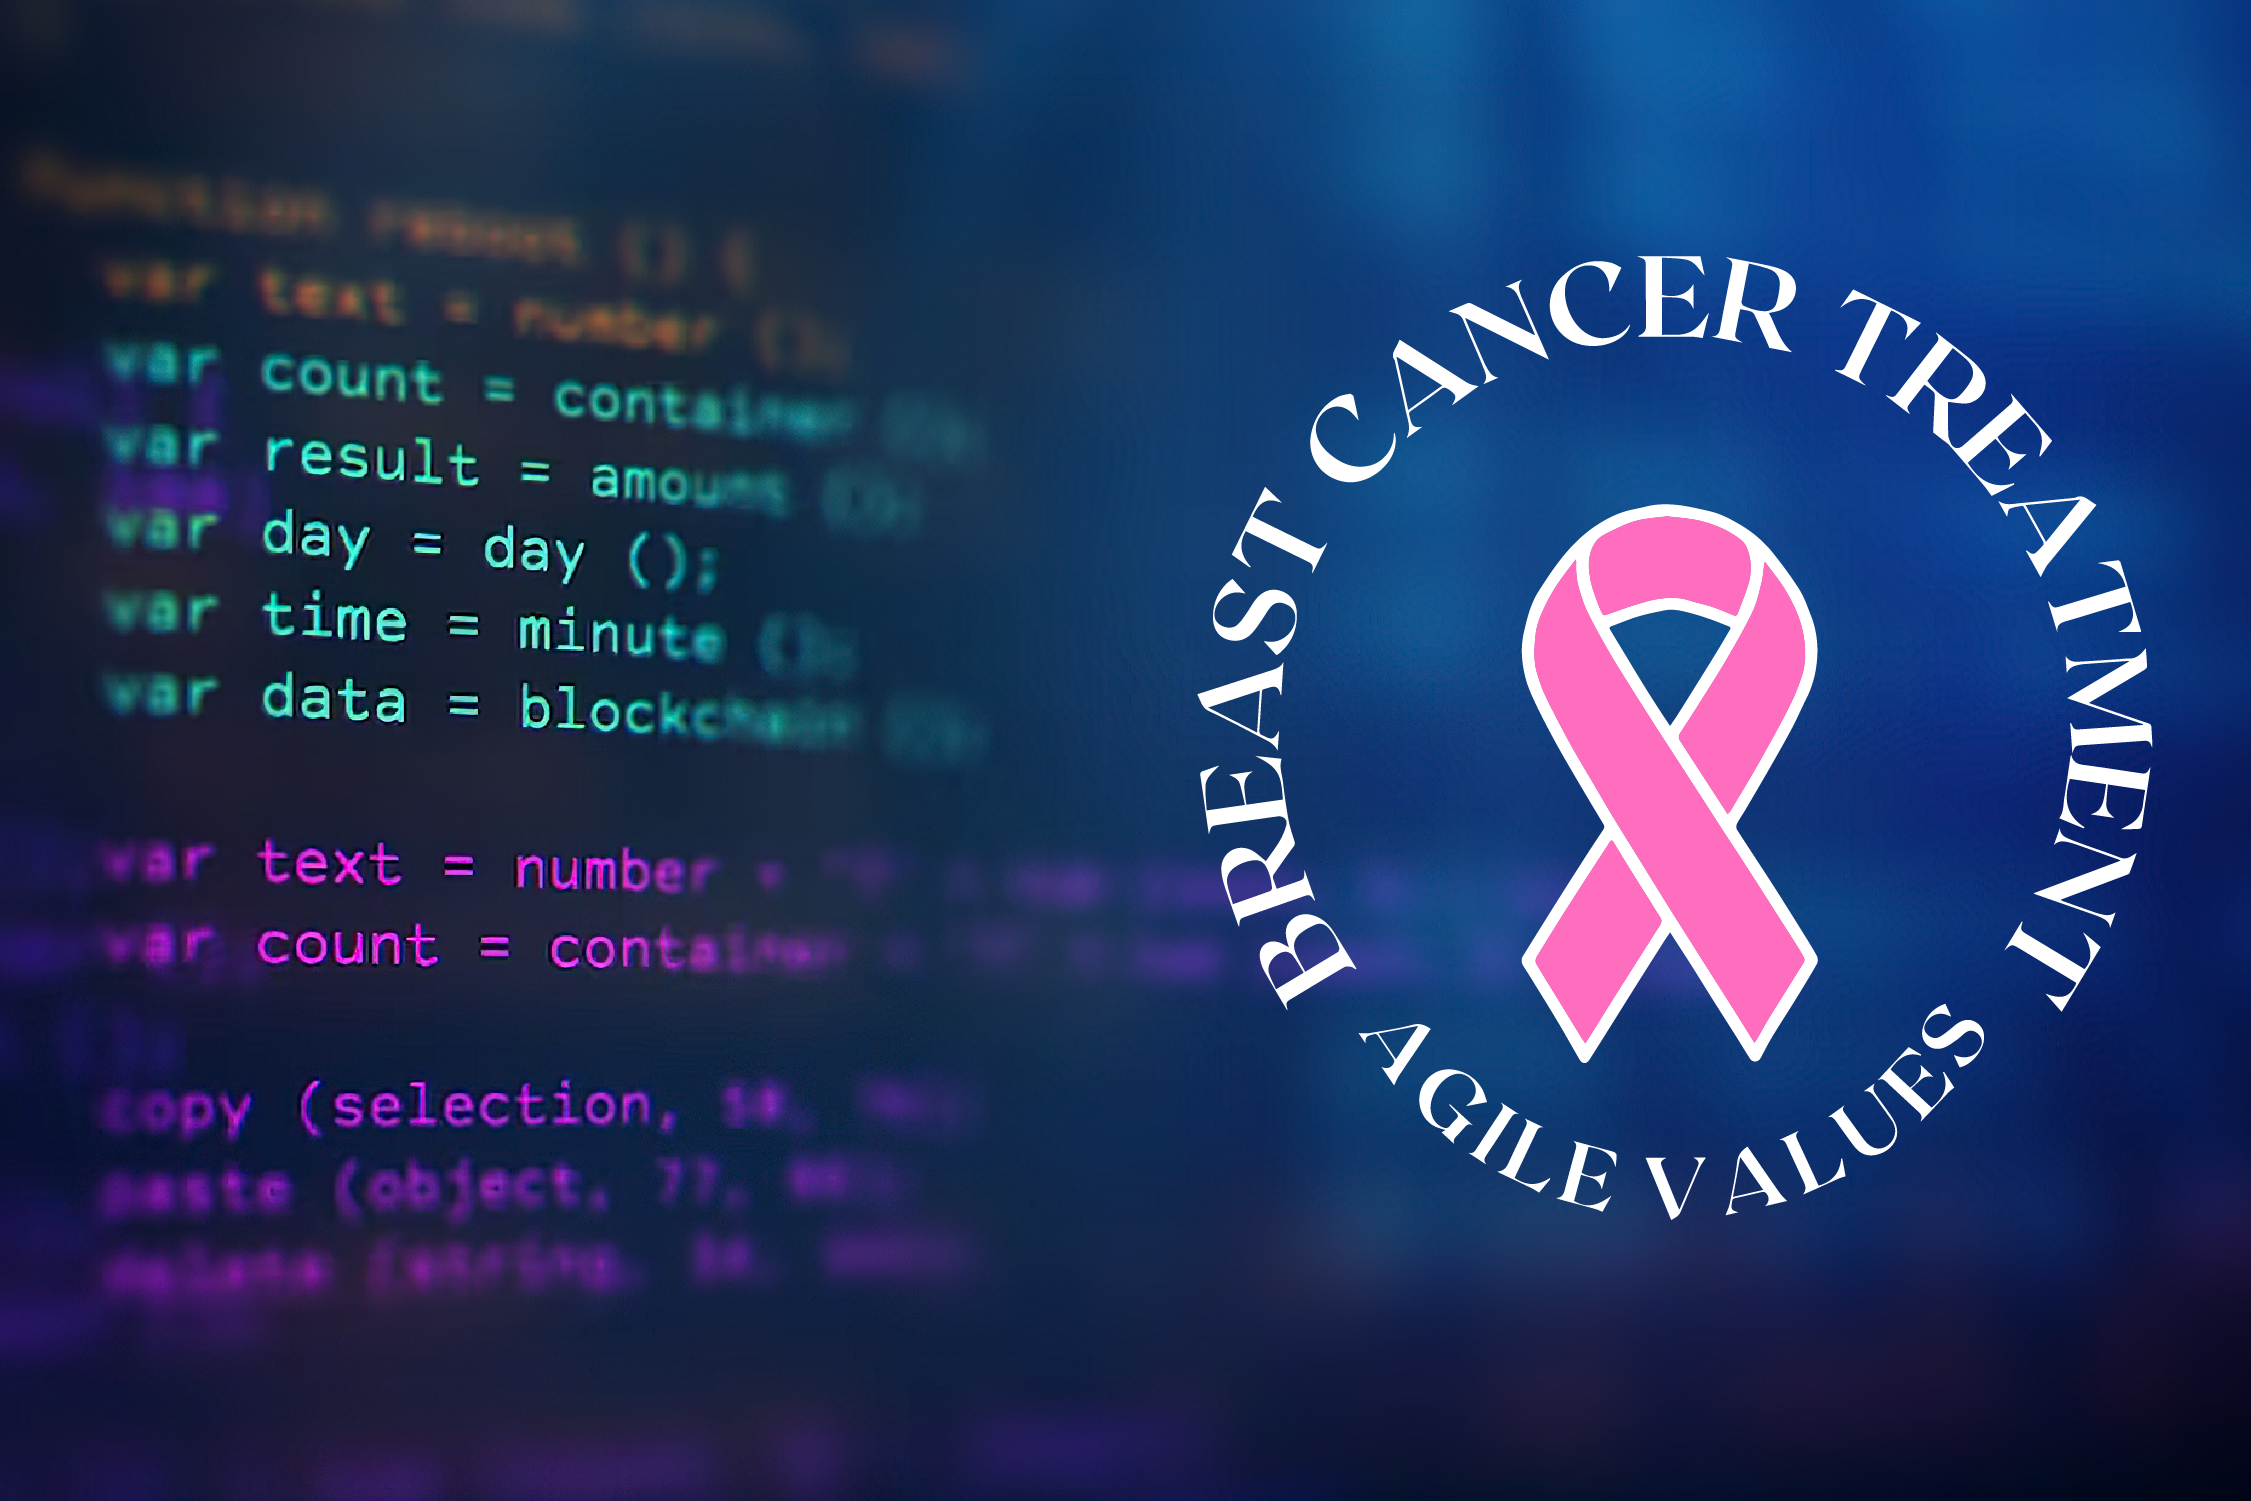 أربعة قيم مرنة من هندسة البرمجيات لعلاج سرطان الثدي